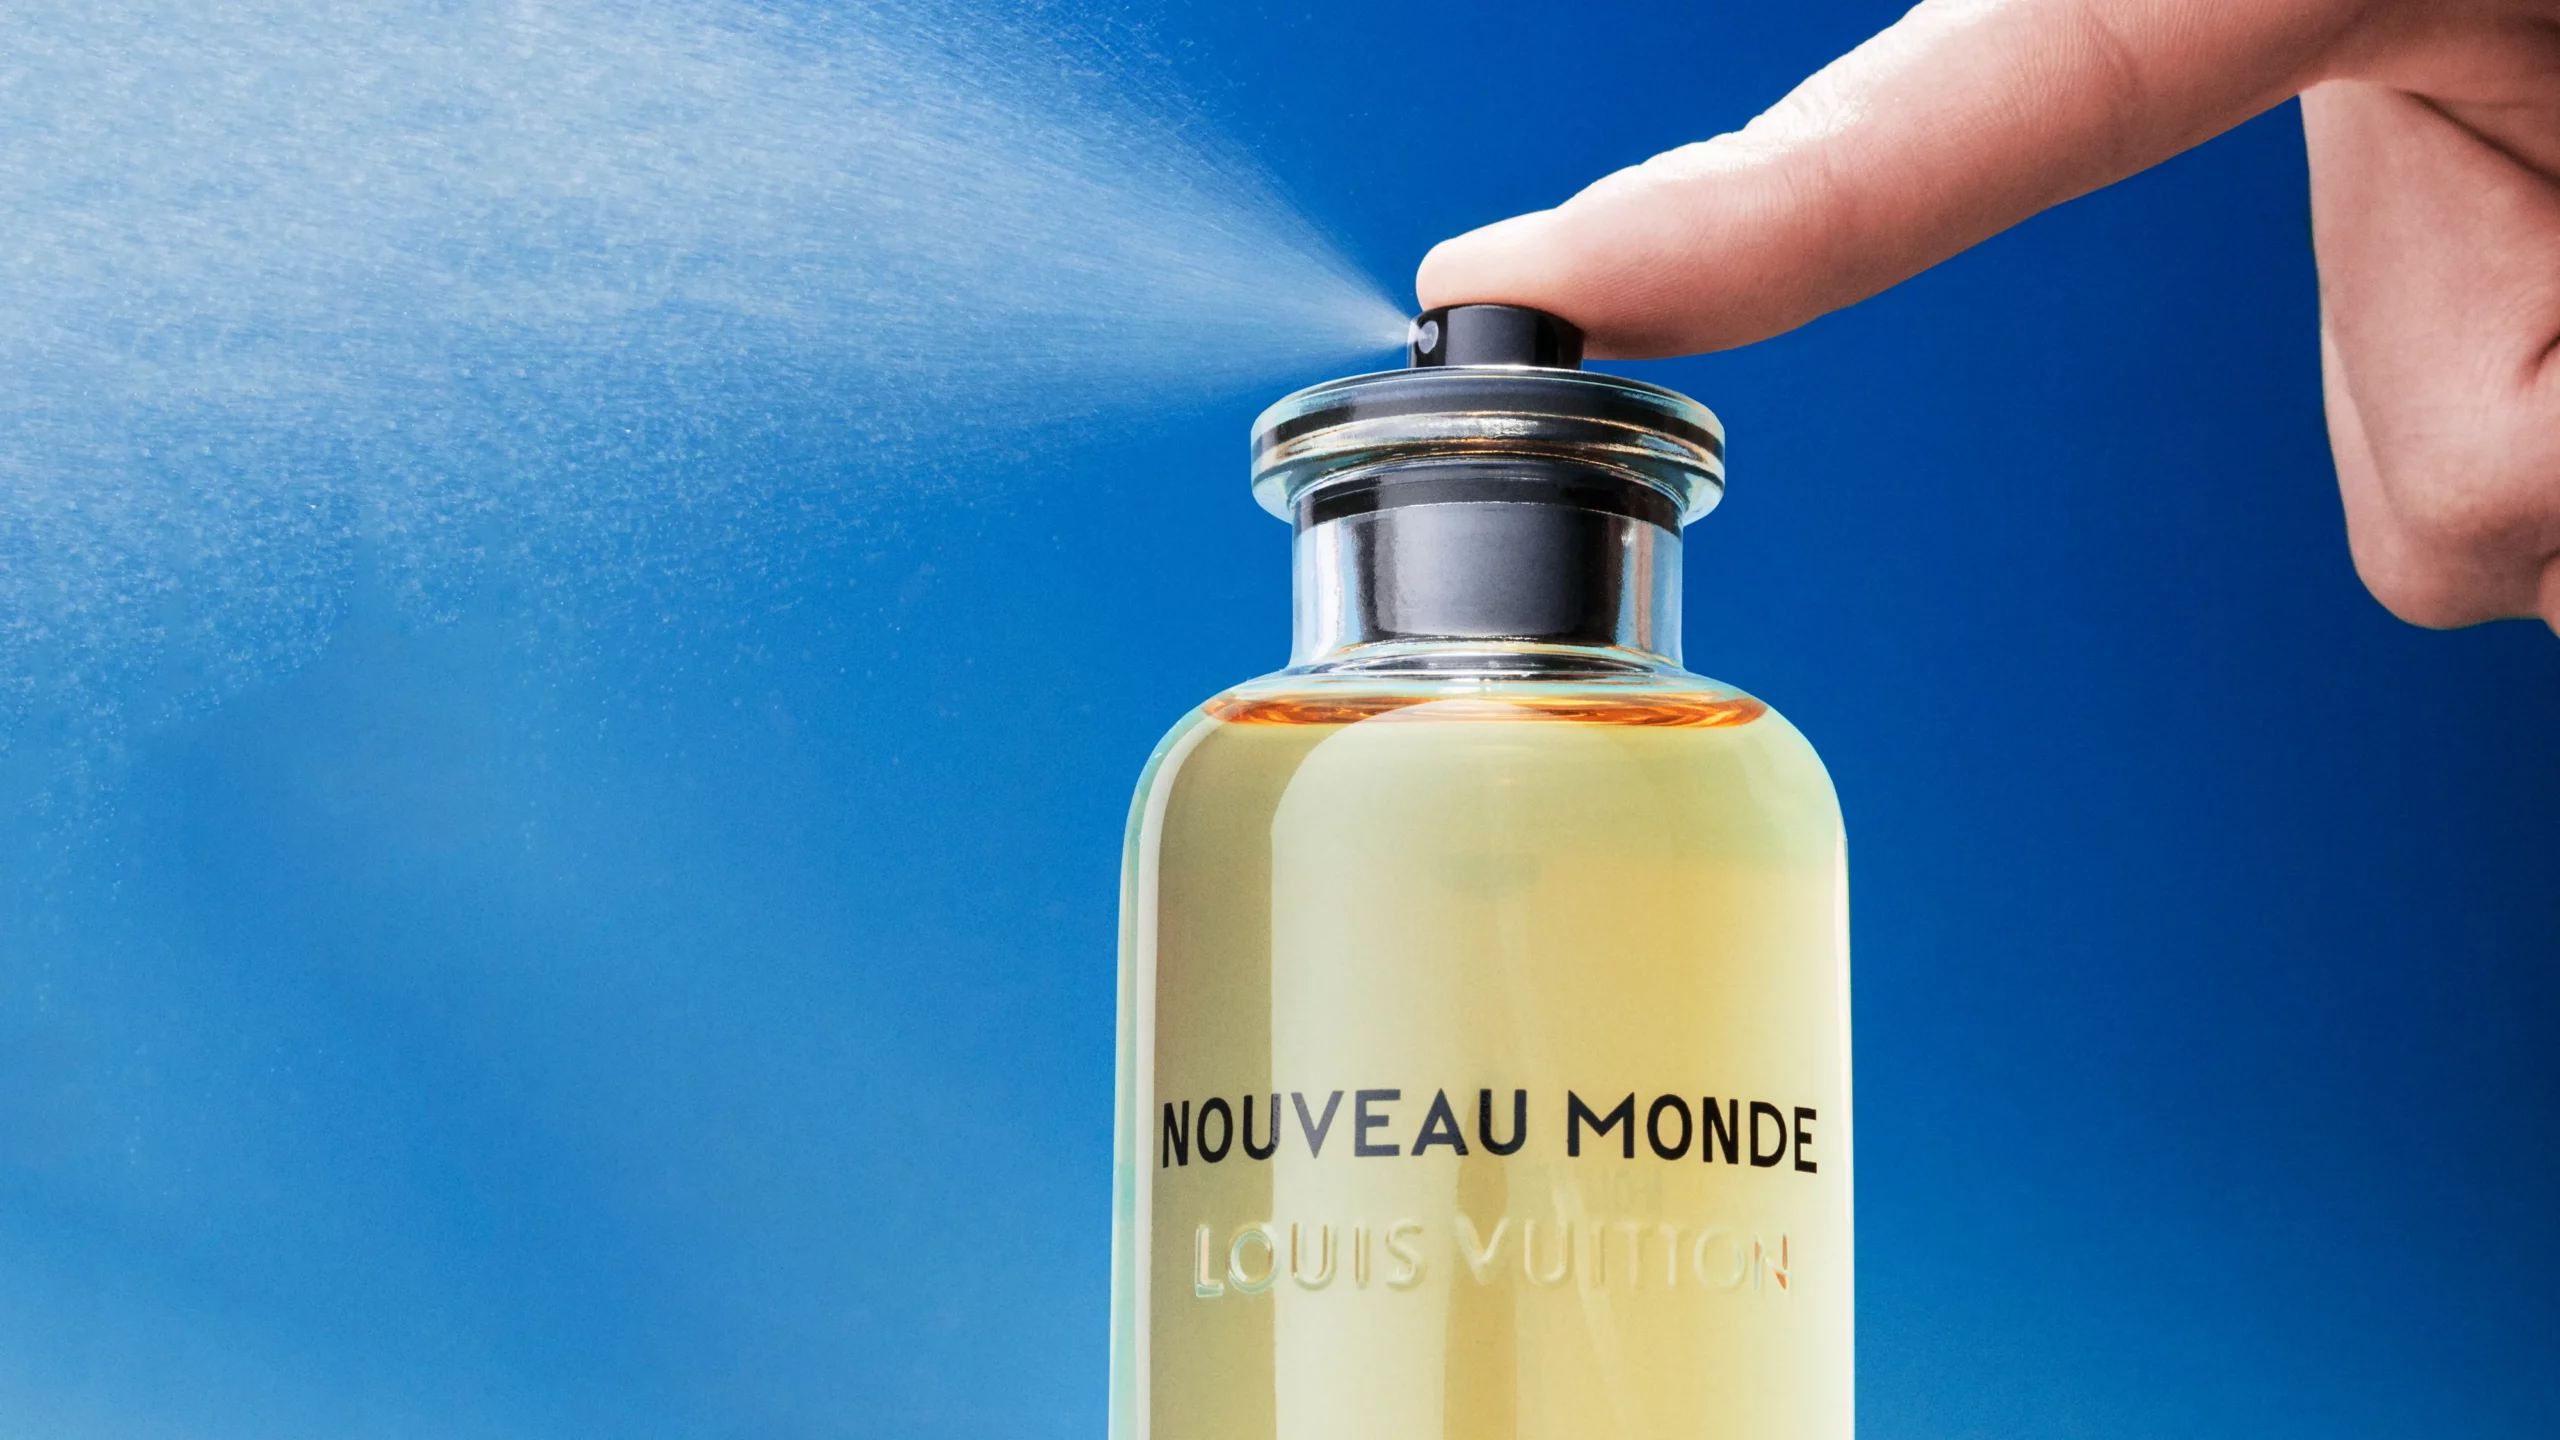 7 Best Louis Vuitton Fragrances for Men  bestmenscolognescom